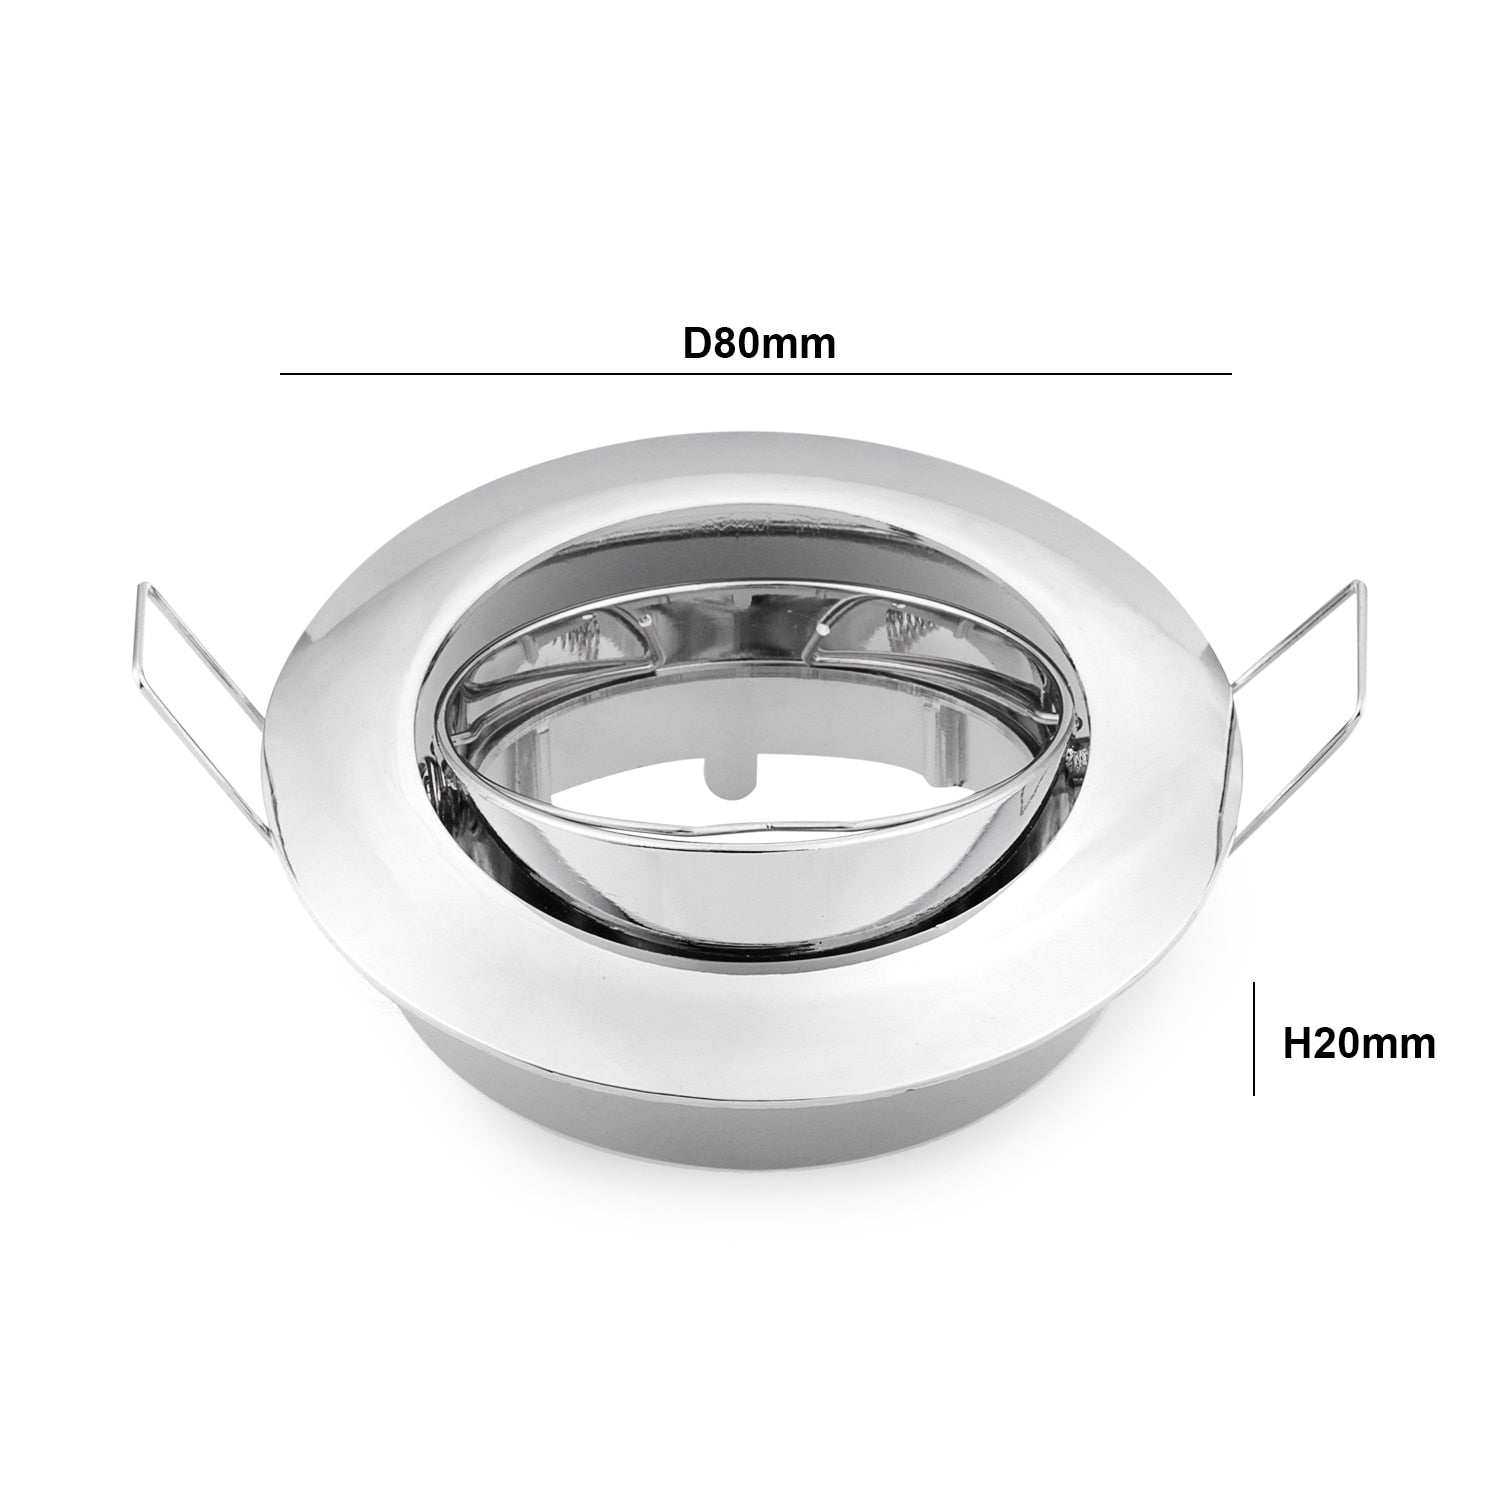 Adjustable Ceiling Lamp Holder Bases Halogen Light Bracket Cup Aluminum LED Downlight GU10 MR16 Spot Light Bulb Lamp Holders